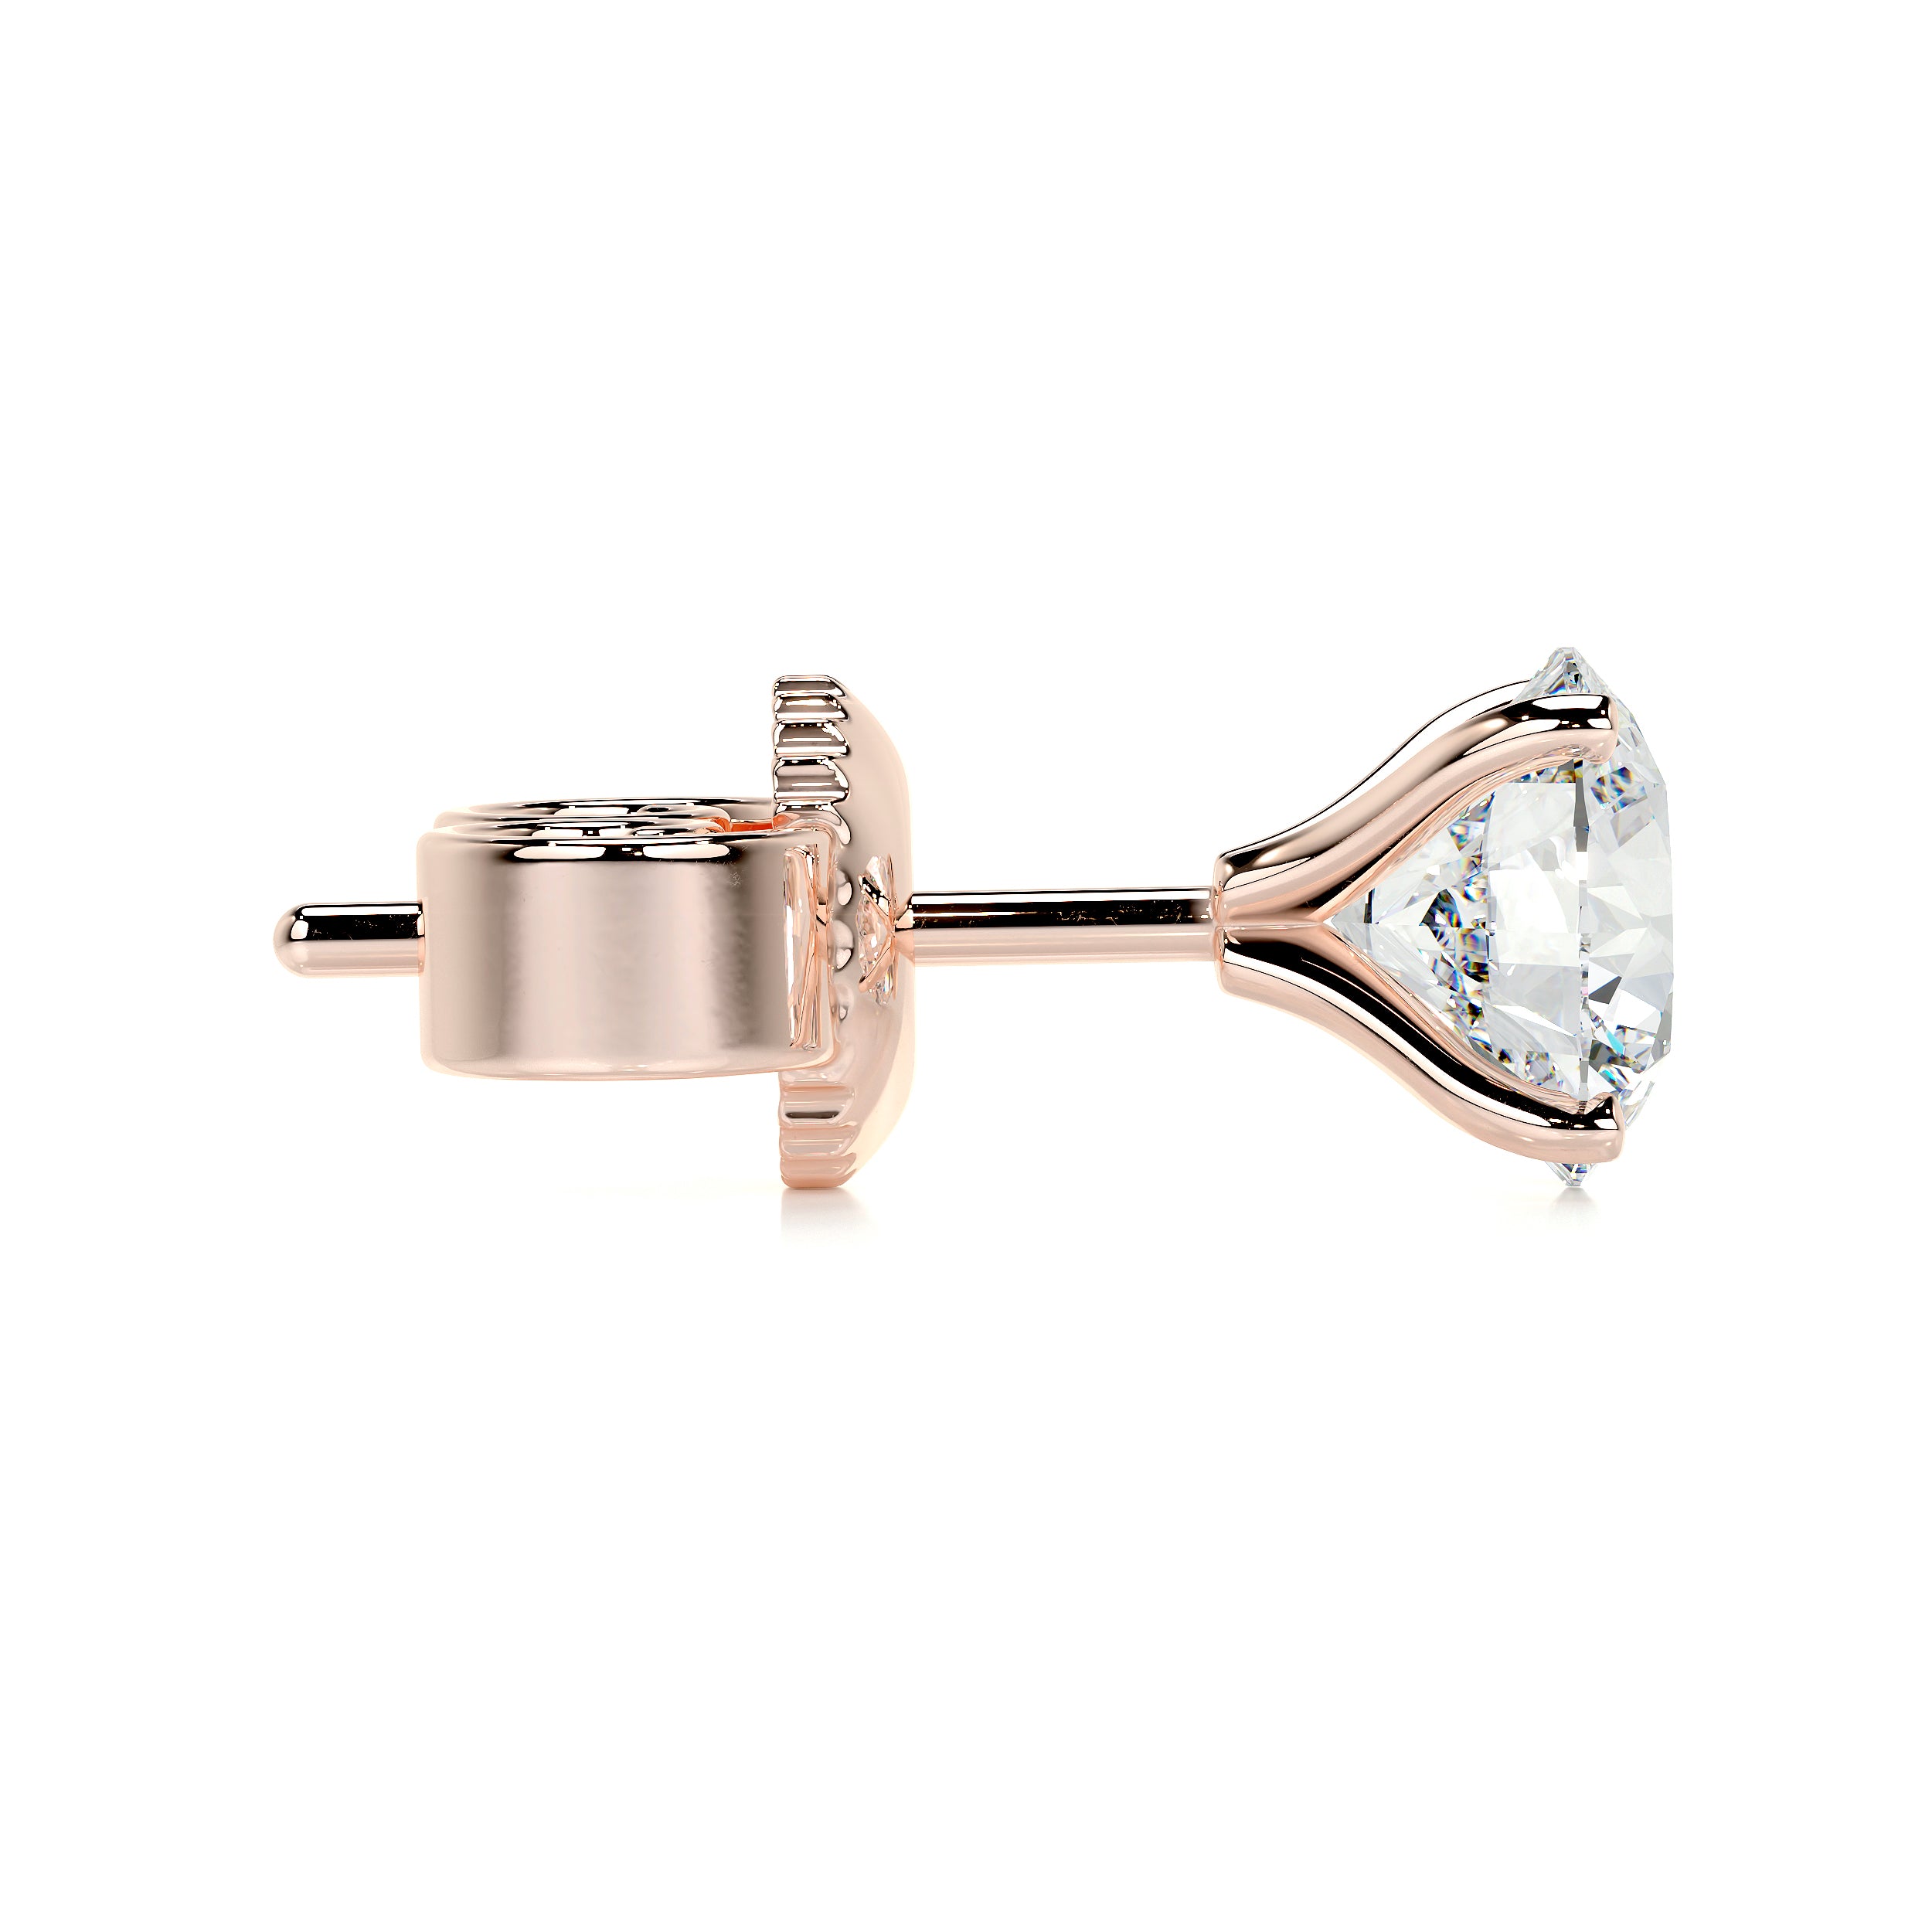 Allen Lab Grown Diamond Earrings   (5 Carat) -14K Rose Gold